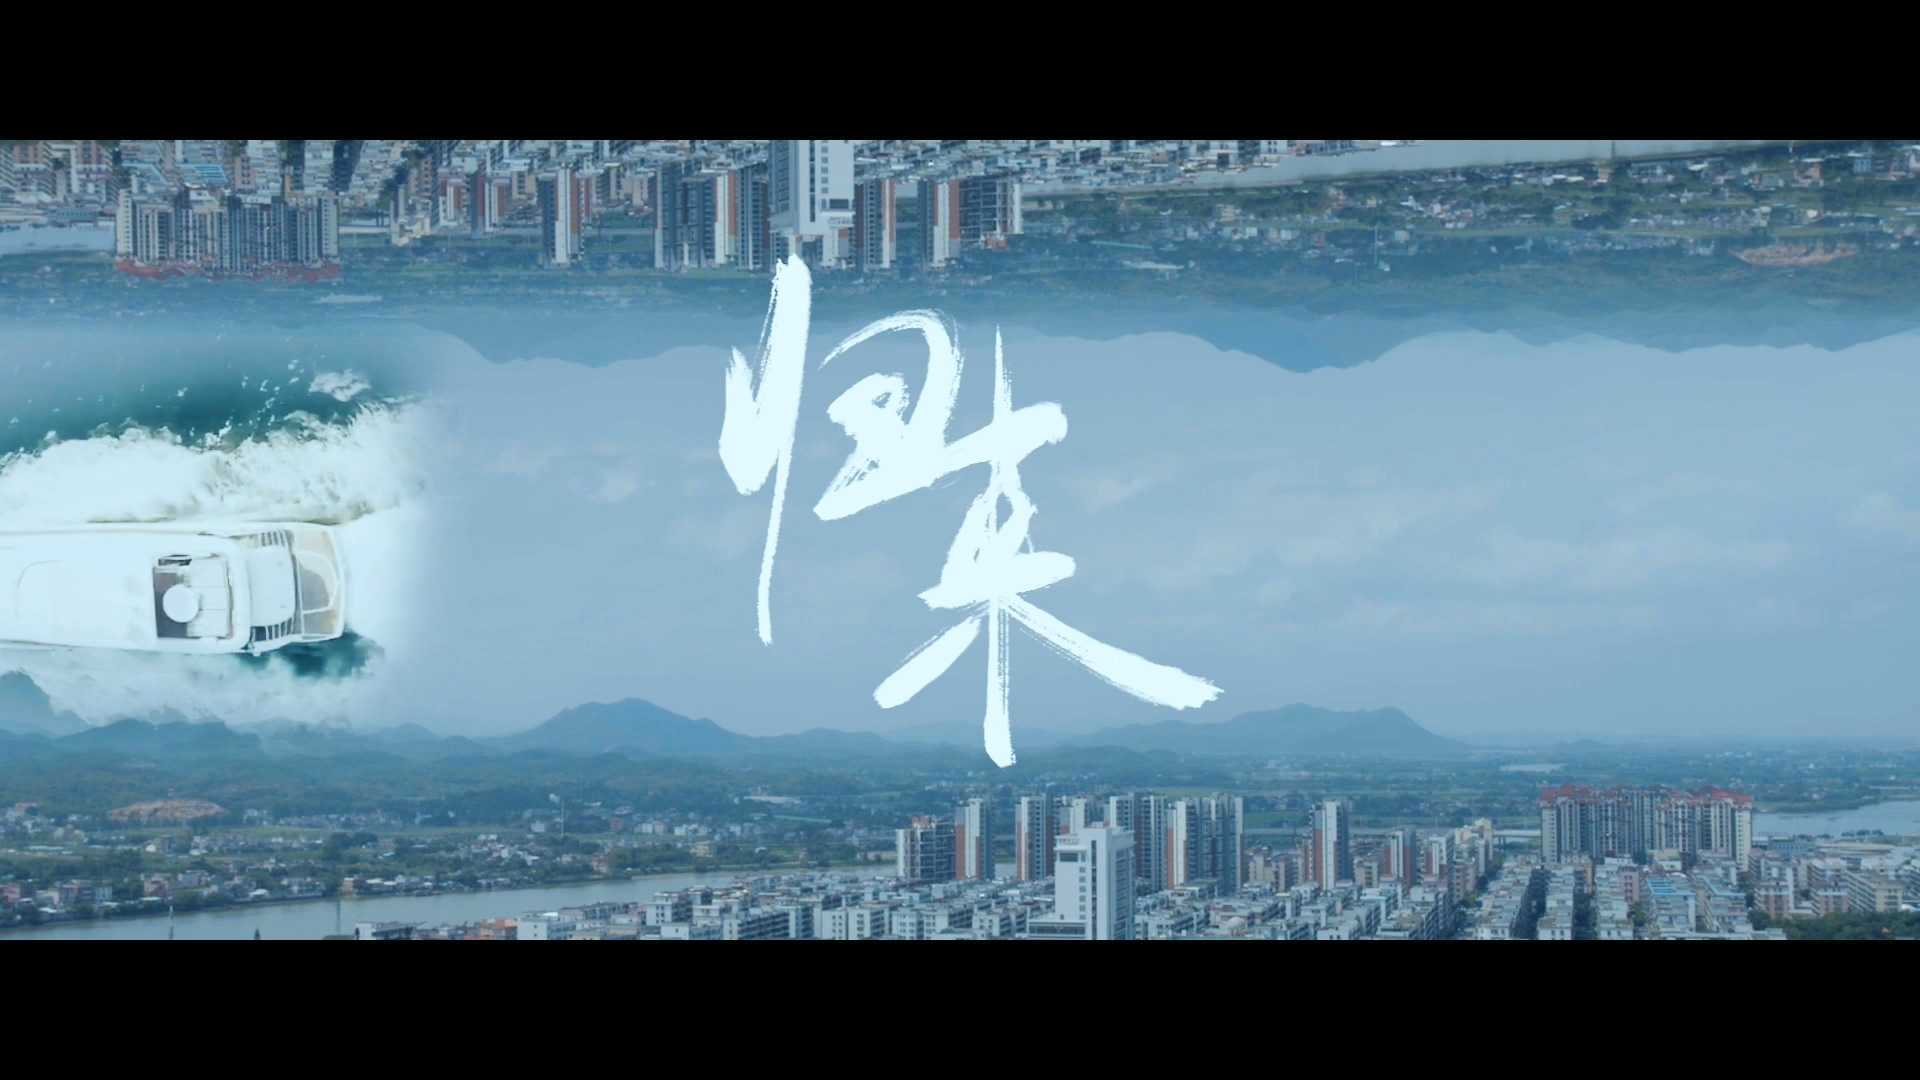 【开平新故事】史上最文艺微电影《归来》